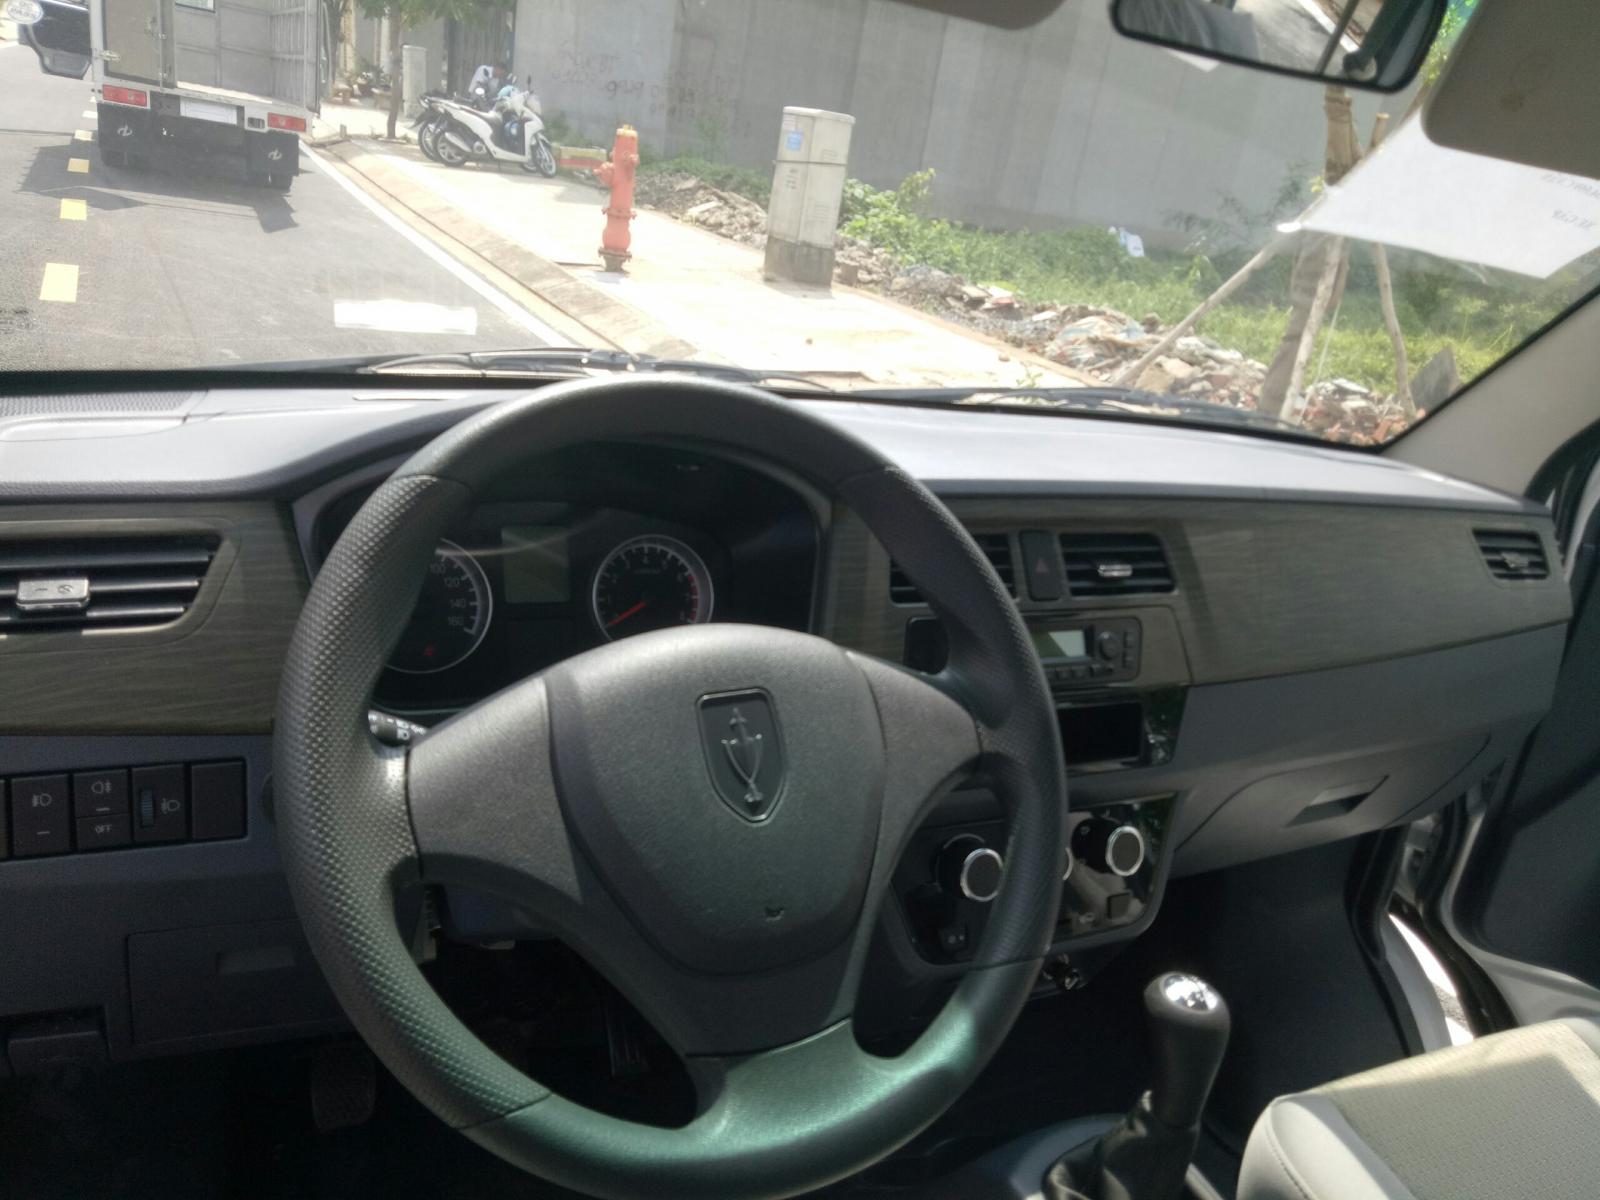 Xe tải 1,5 tấn - dưới 2,5 tấn 2019 - Bán xe Dongben Q20 năm 2019, màu bạc